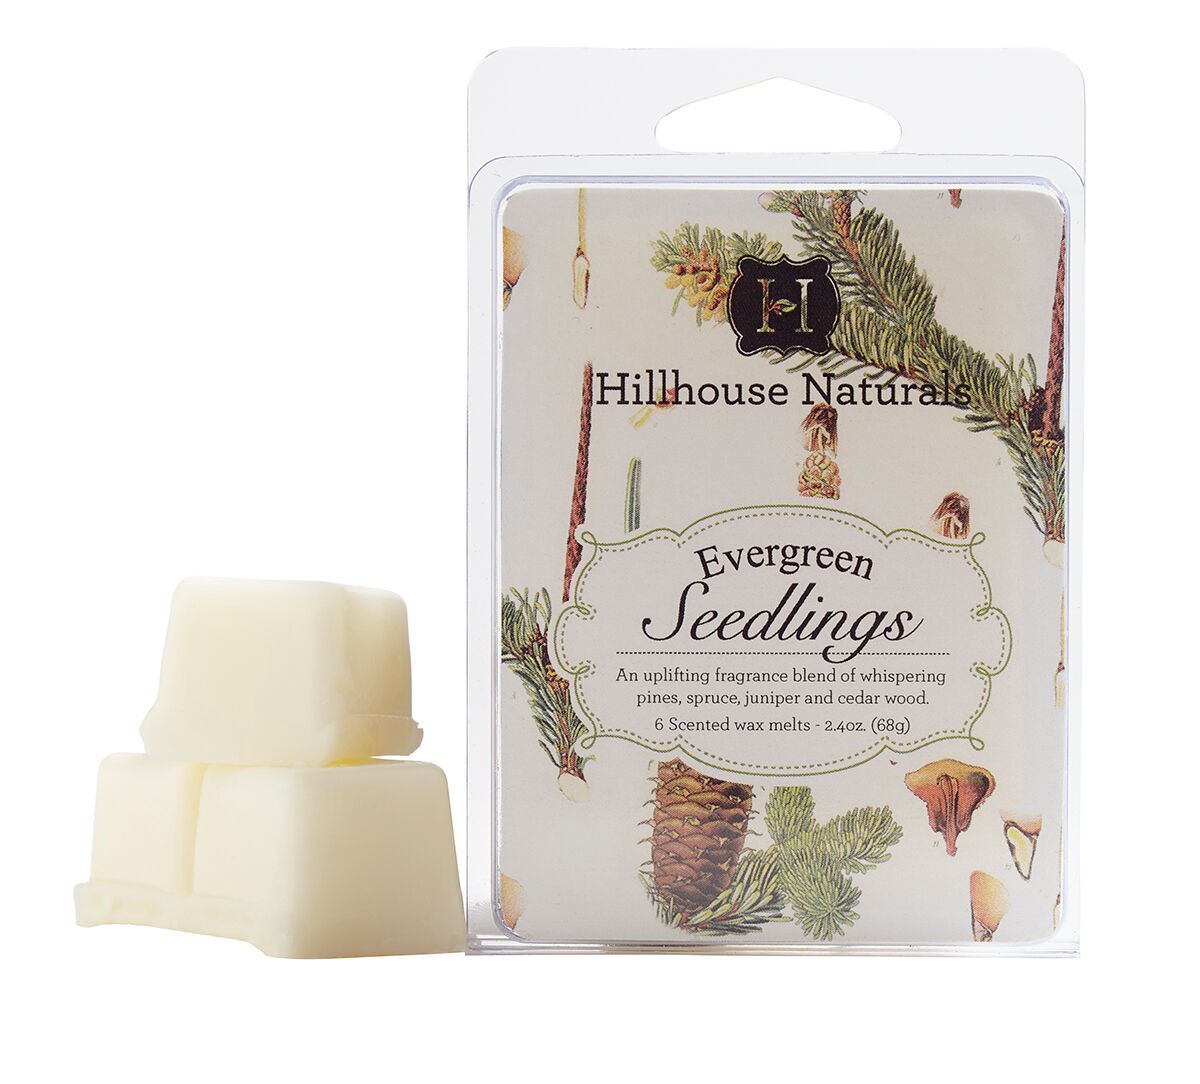 EVERGREEN SEEDLINGS Hillhouse Naturals Wax Melt 2.4 oz